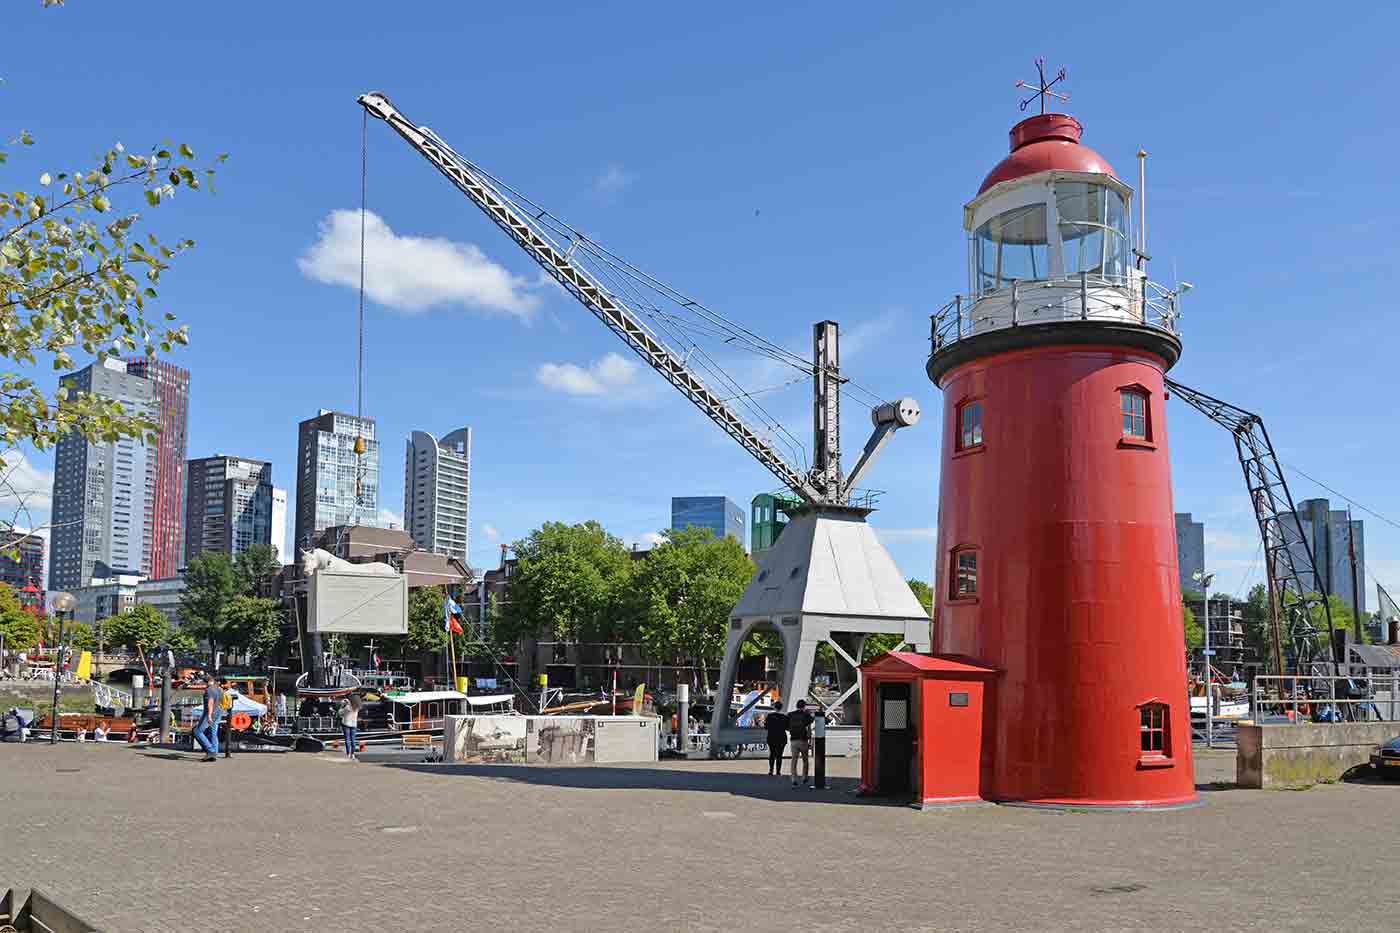 Maritime Museum of Rotterdam